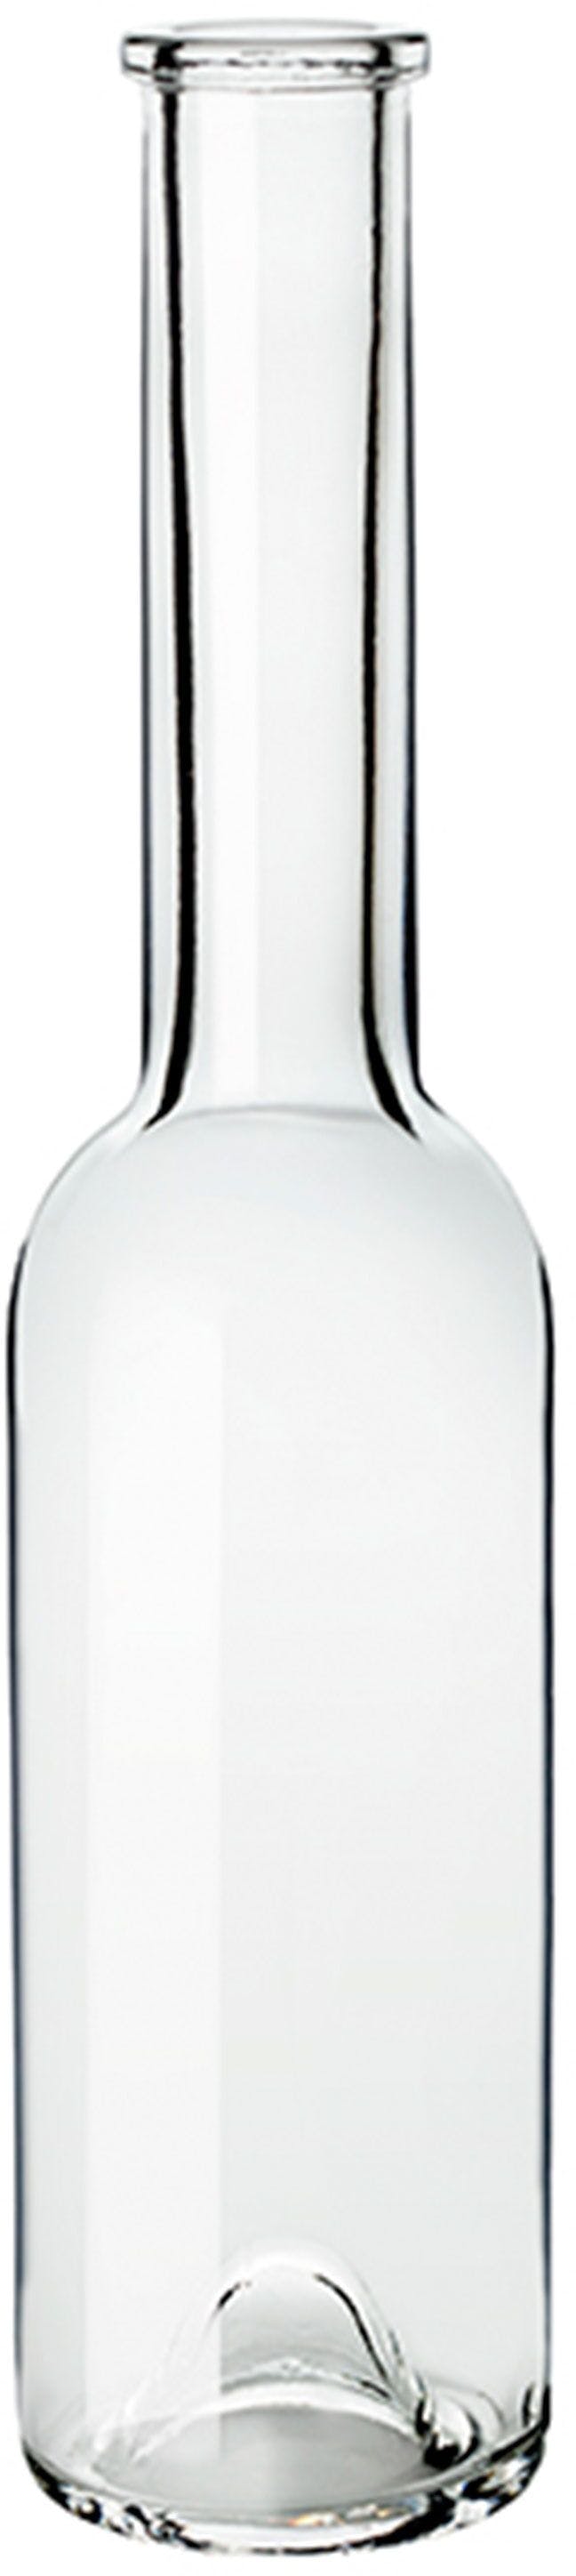 Bottiglia SINFONIA  OPERA 250 ml BG-Sughero